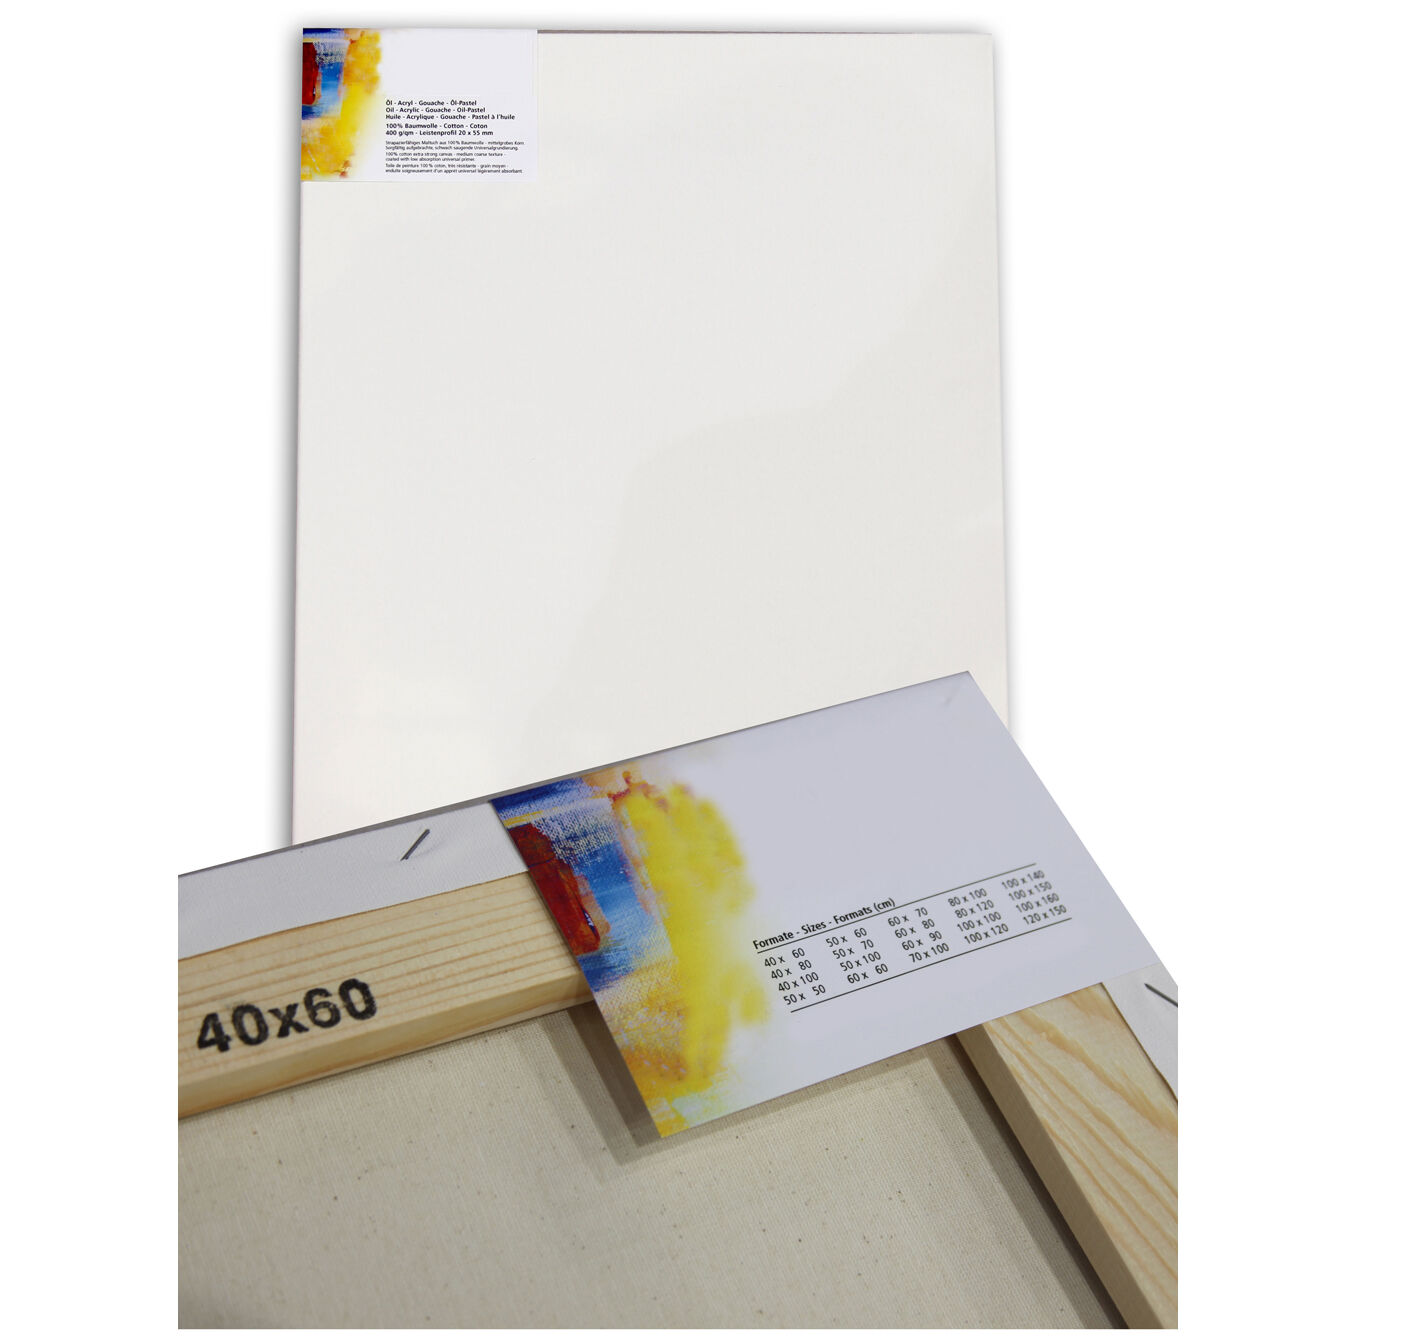 NEU Cotton 400 Premium-Keilrahmen Professionell 20mm Leistenstärke, 80x100cm - 1 Stück Bild 2